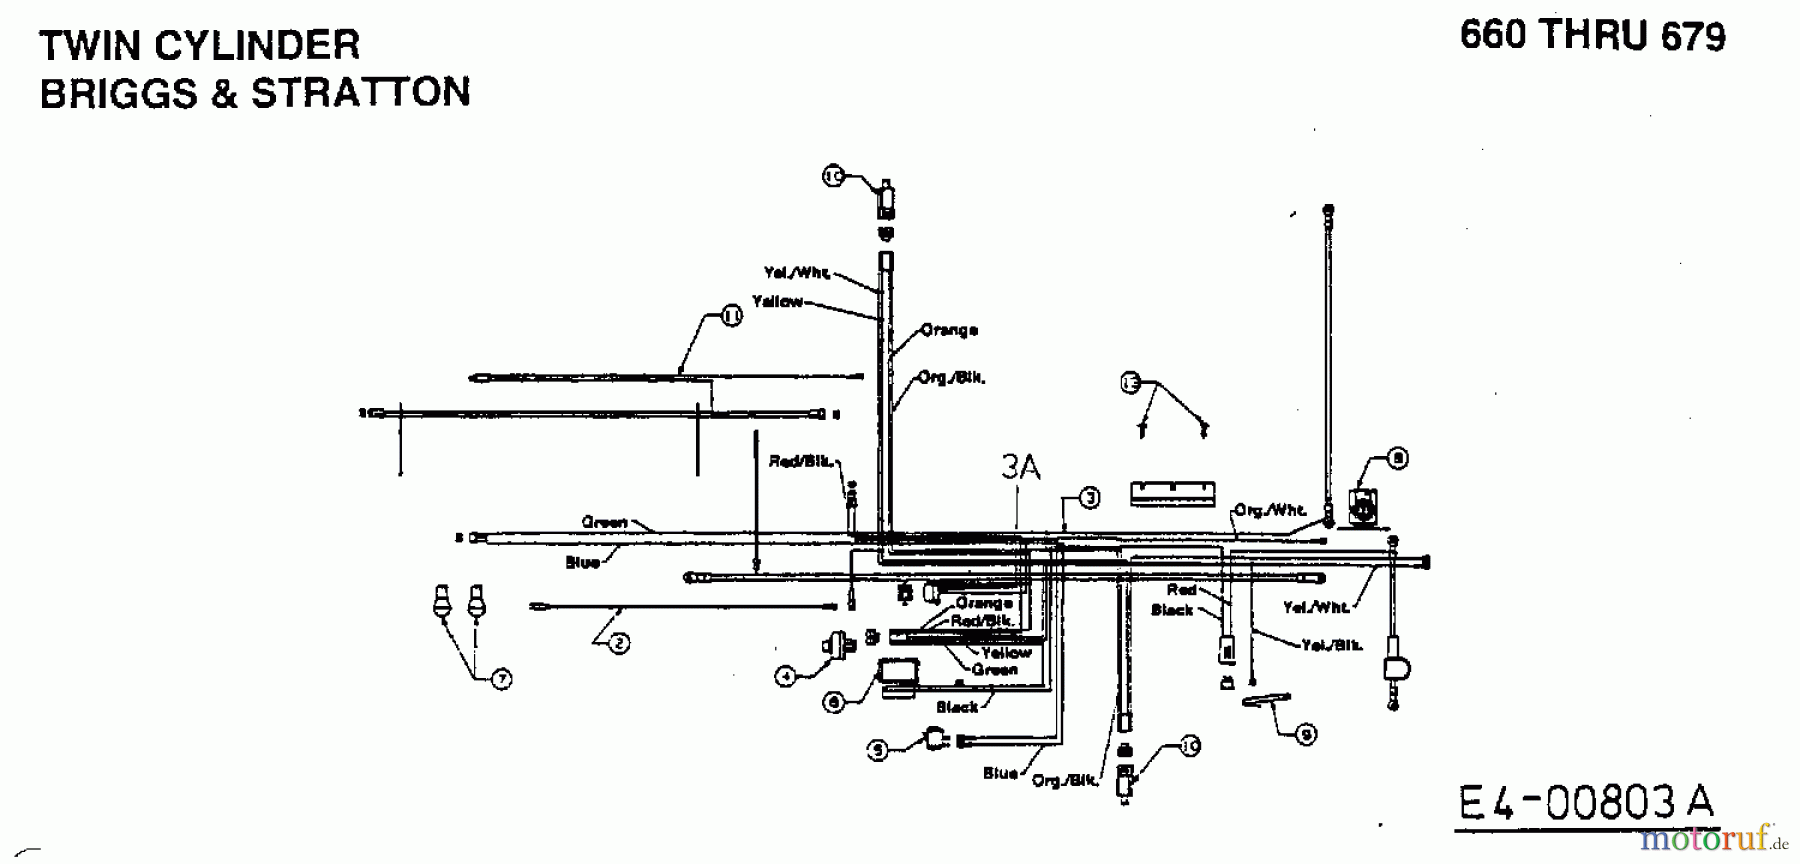  MTD Rasentraktoren B 145 13AM675G678  (1998) Schaltplan 2 Zylinder